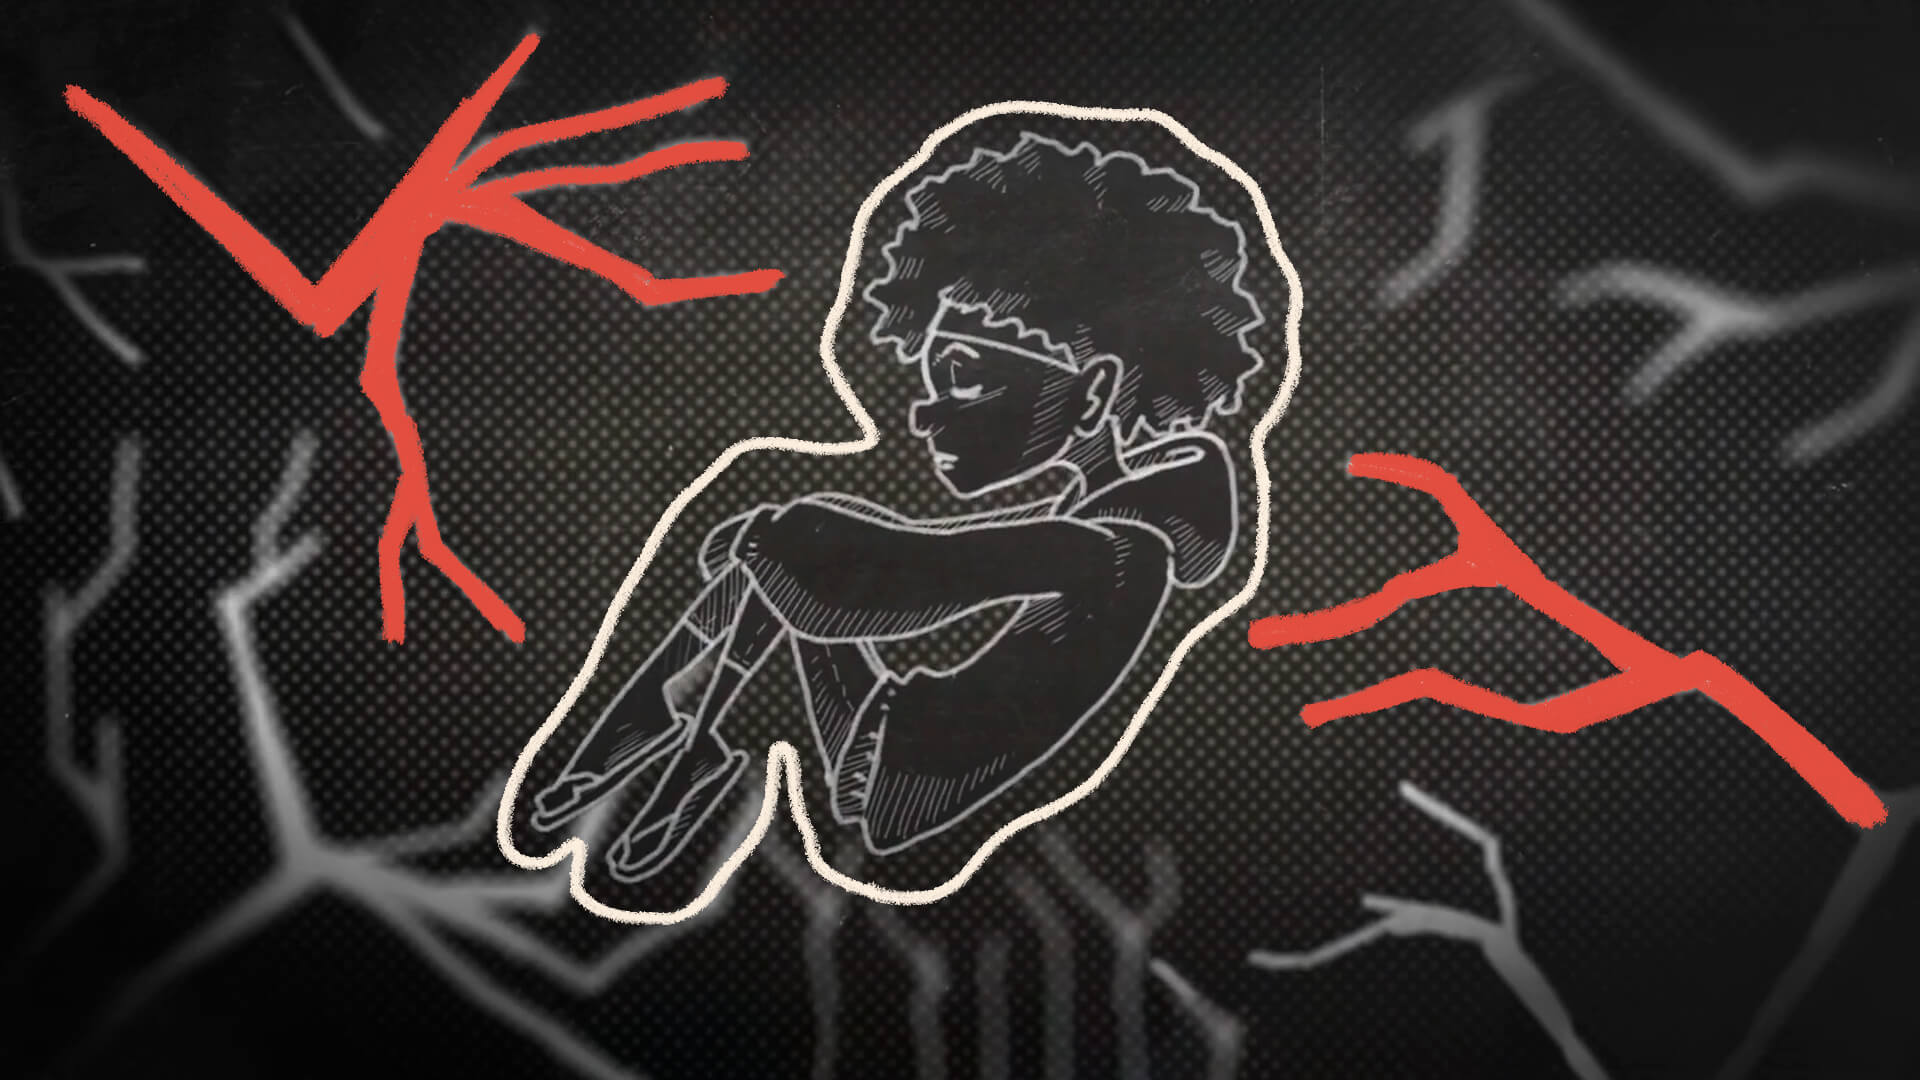 Na ilustração, uma menina de cabelos crespos abraça as pernas e mantém uma feição triste. A imagem é em preto e branco, e possui intervenções de rabiscos na cor vermelha.